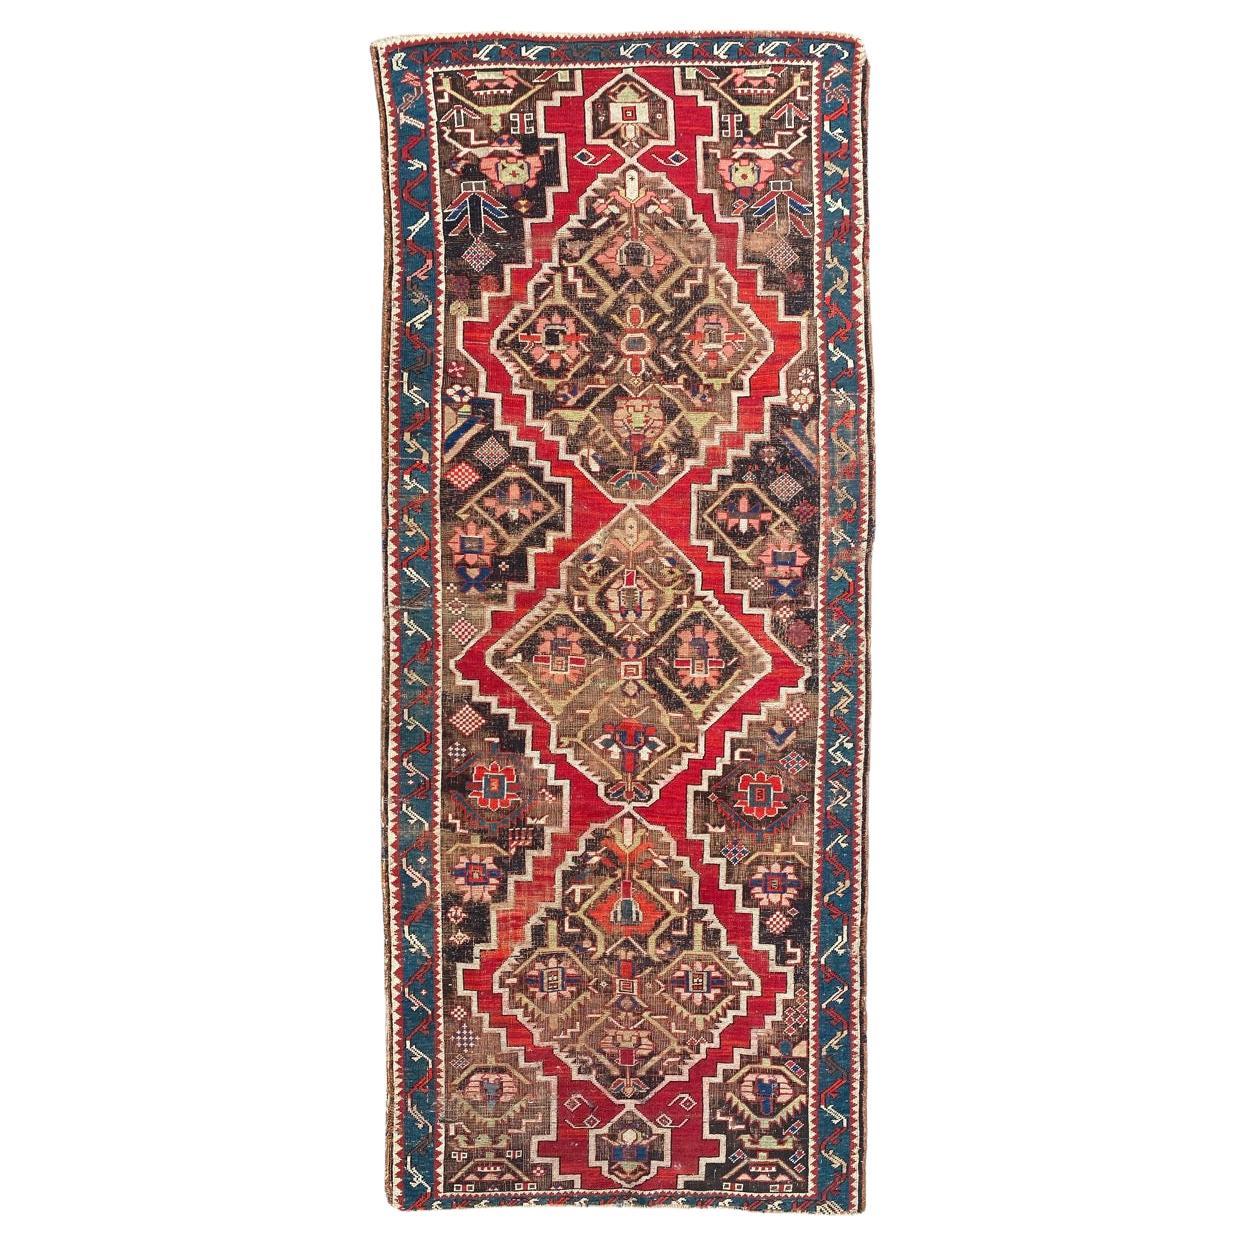 Bobyrug’s Beautiful Distressed Antique Karabagh Rug For Sale